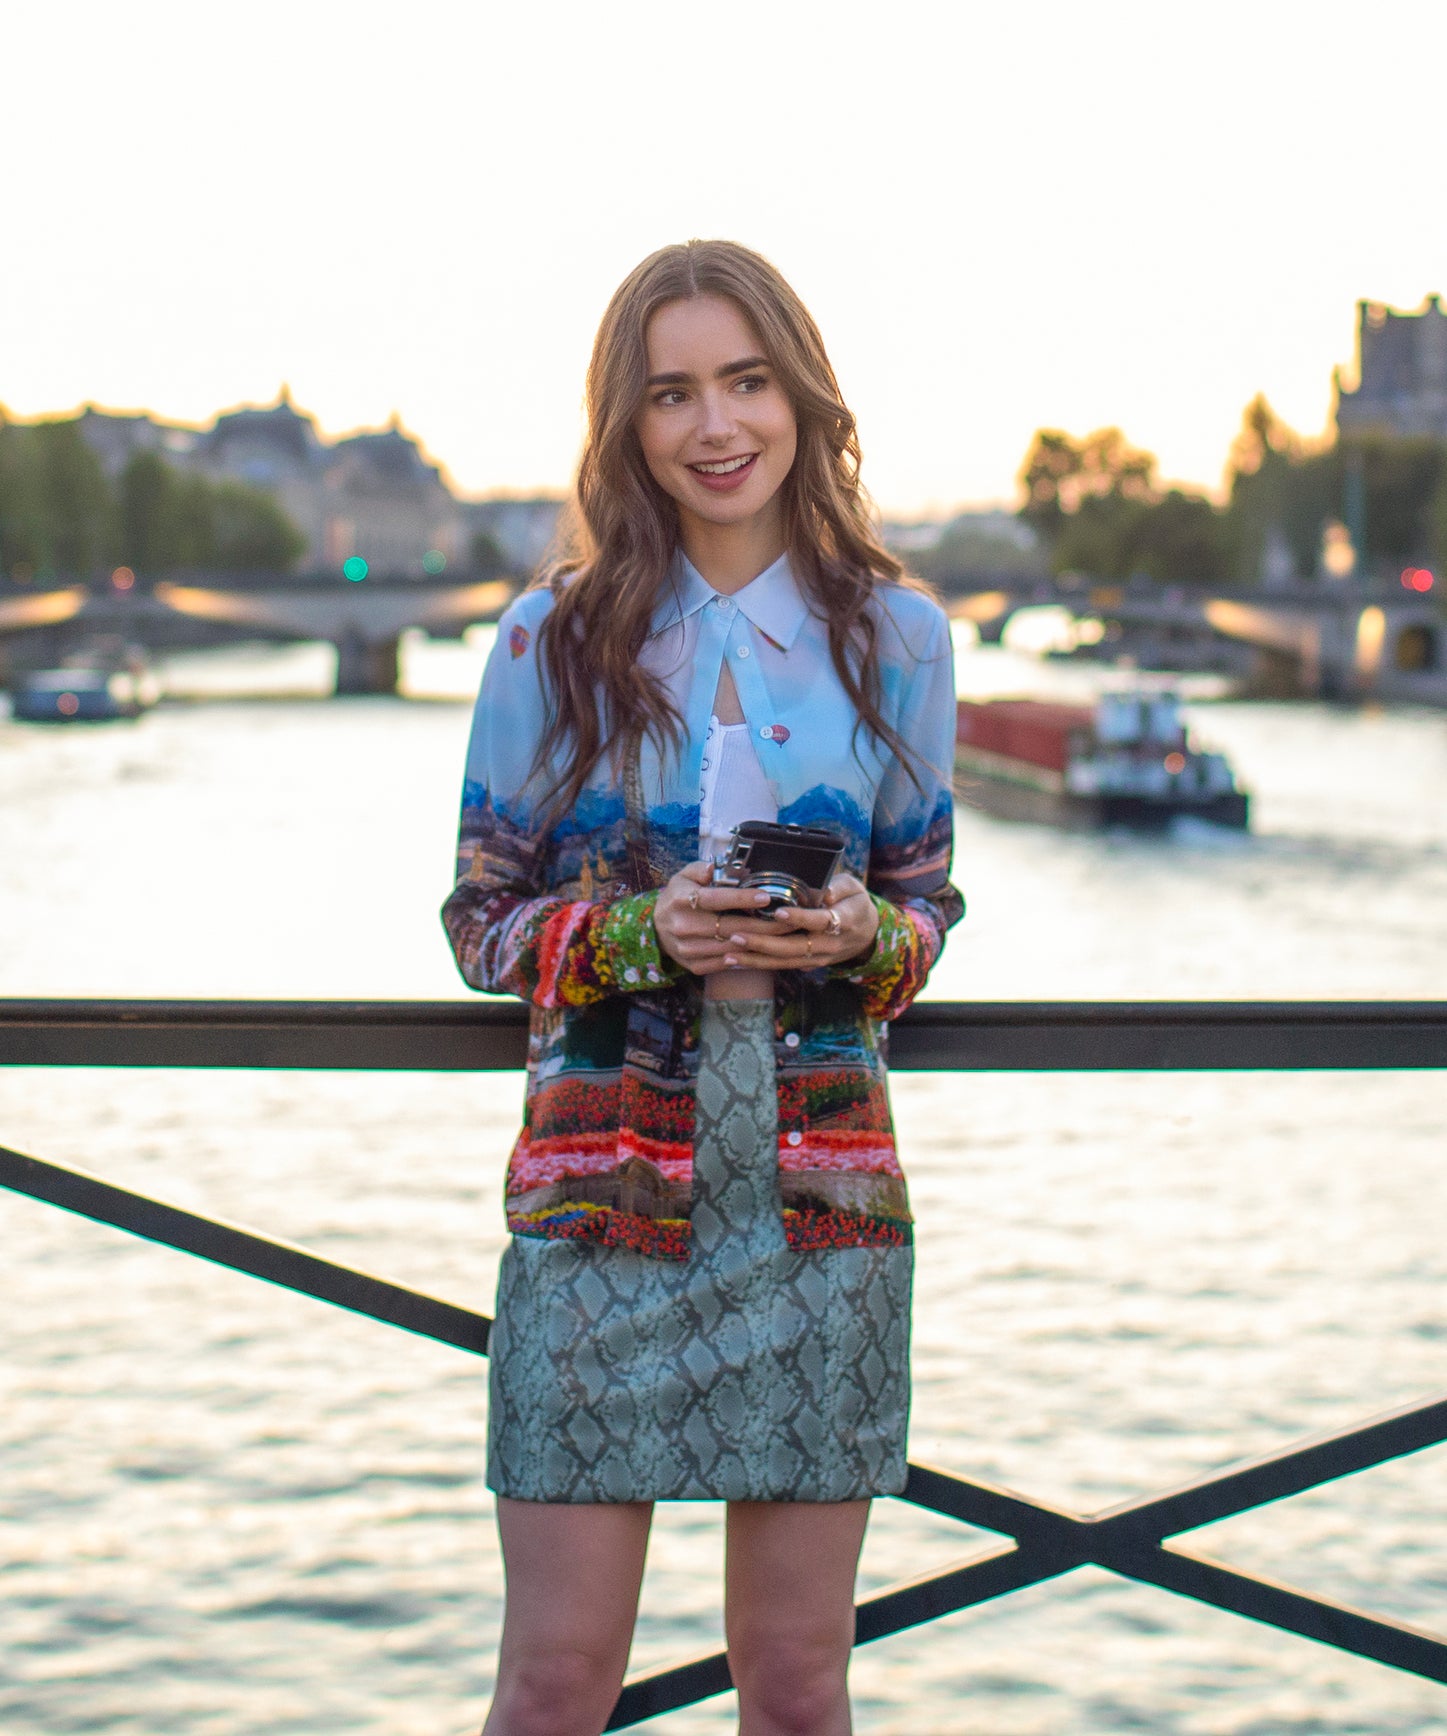 Emily In Paris Capsule Wardrobe With Chic Closet Essentials